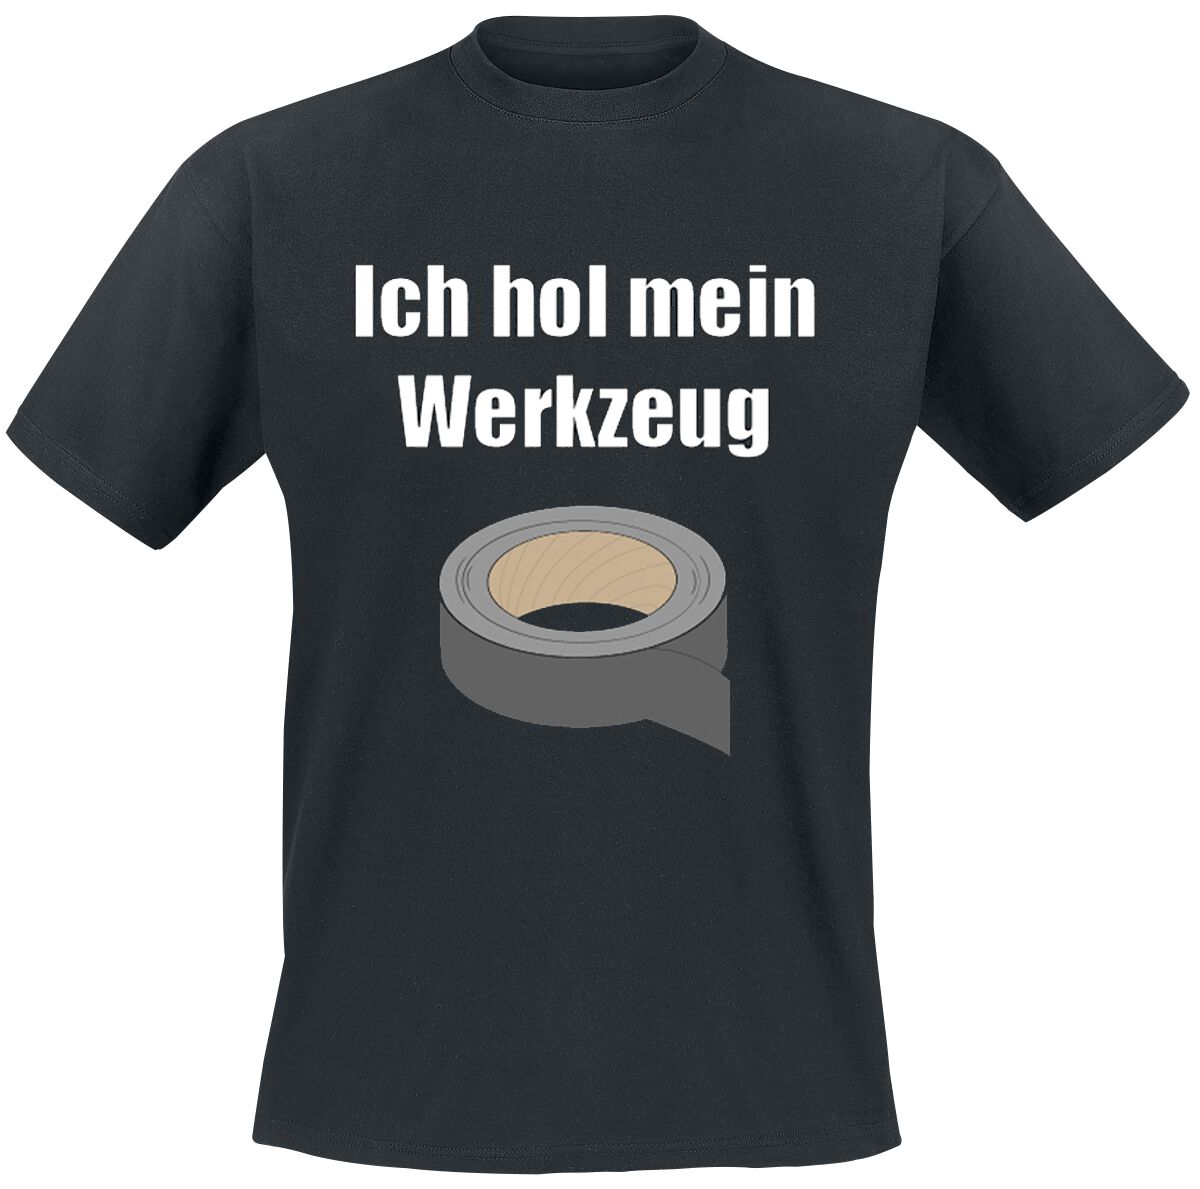 Beruf & Karriere T-Shirt - Ich hol mein Werkzeug - S bis 4XL - für Männer - Größe 3XL - schwarz